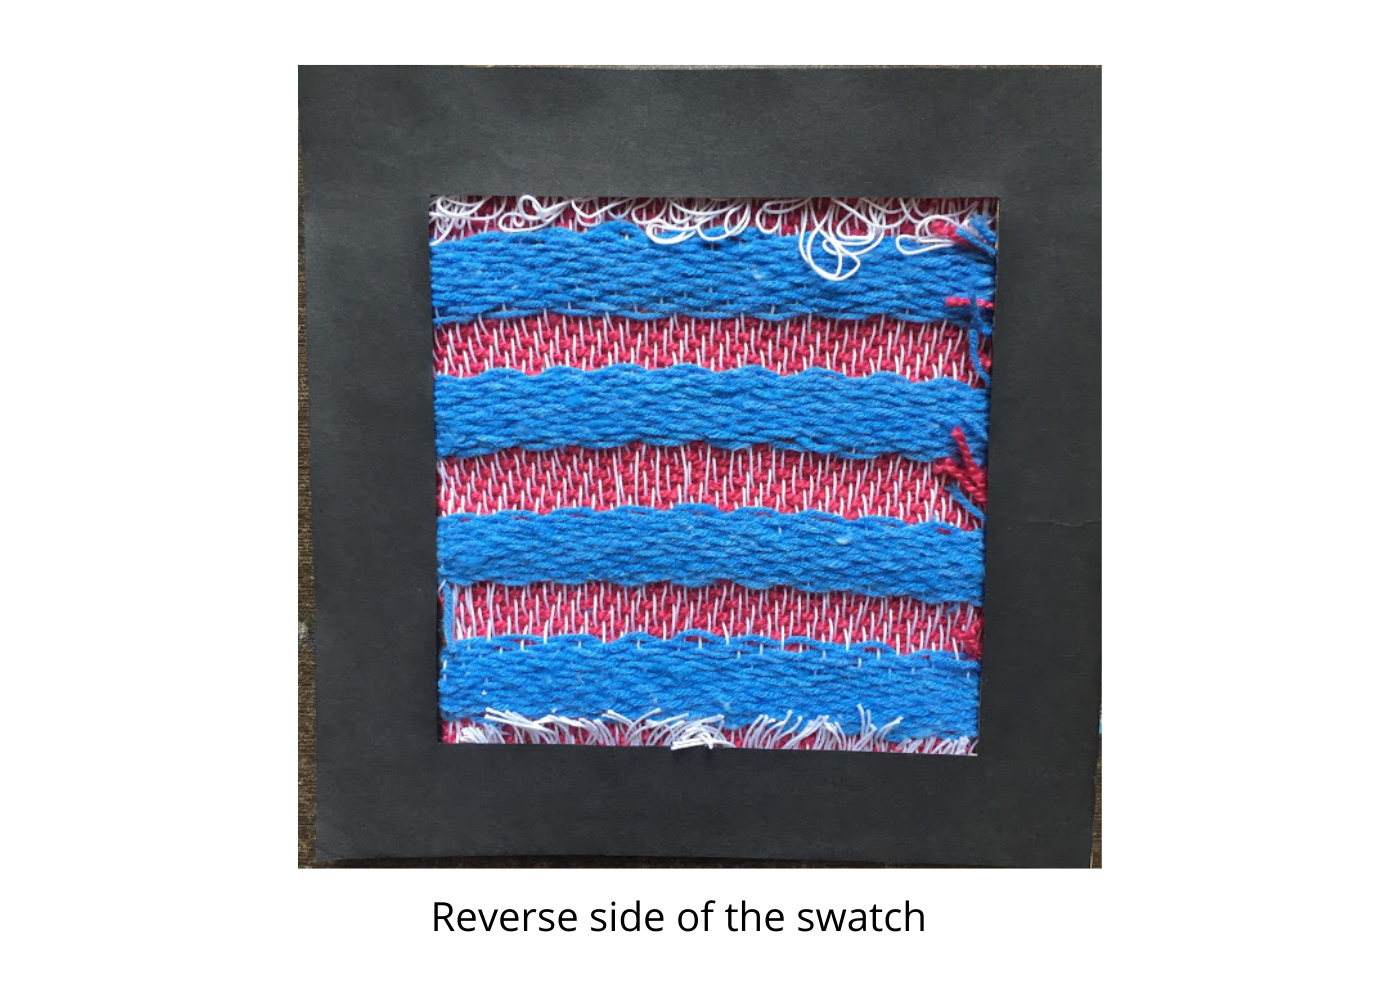 basicweaves contemporary weaving Handweaving textile textile design  Textiles weave weavedesign weaving woven textiles